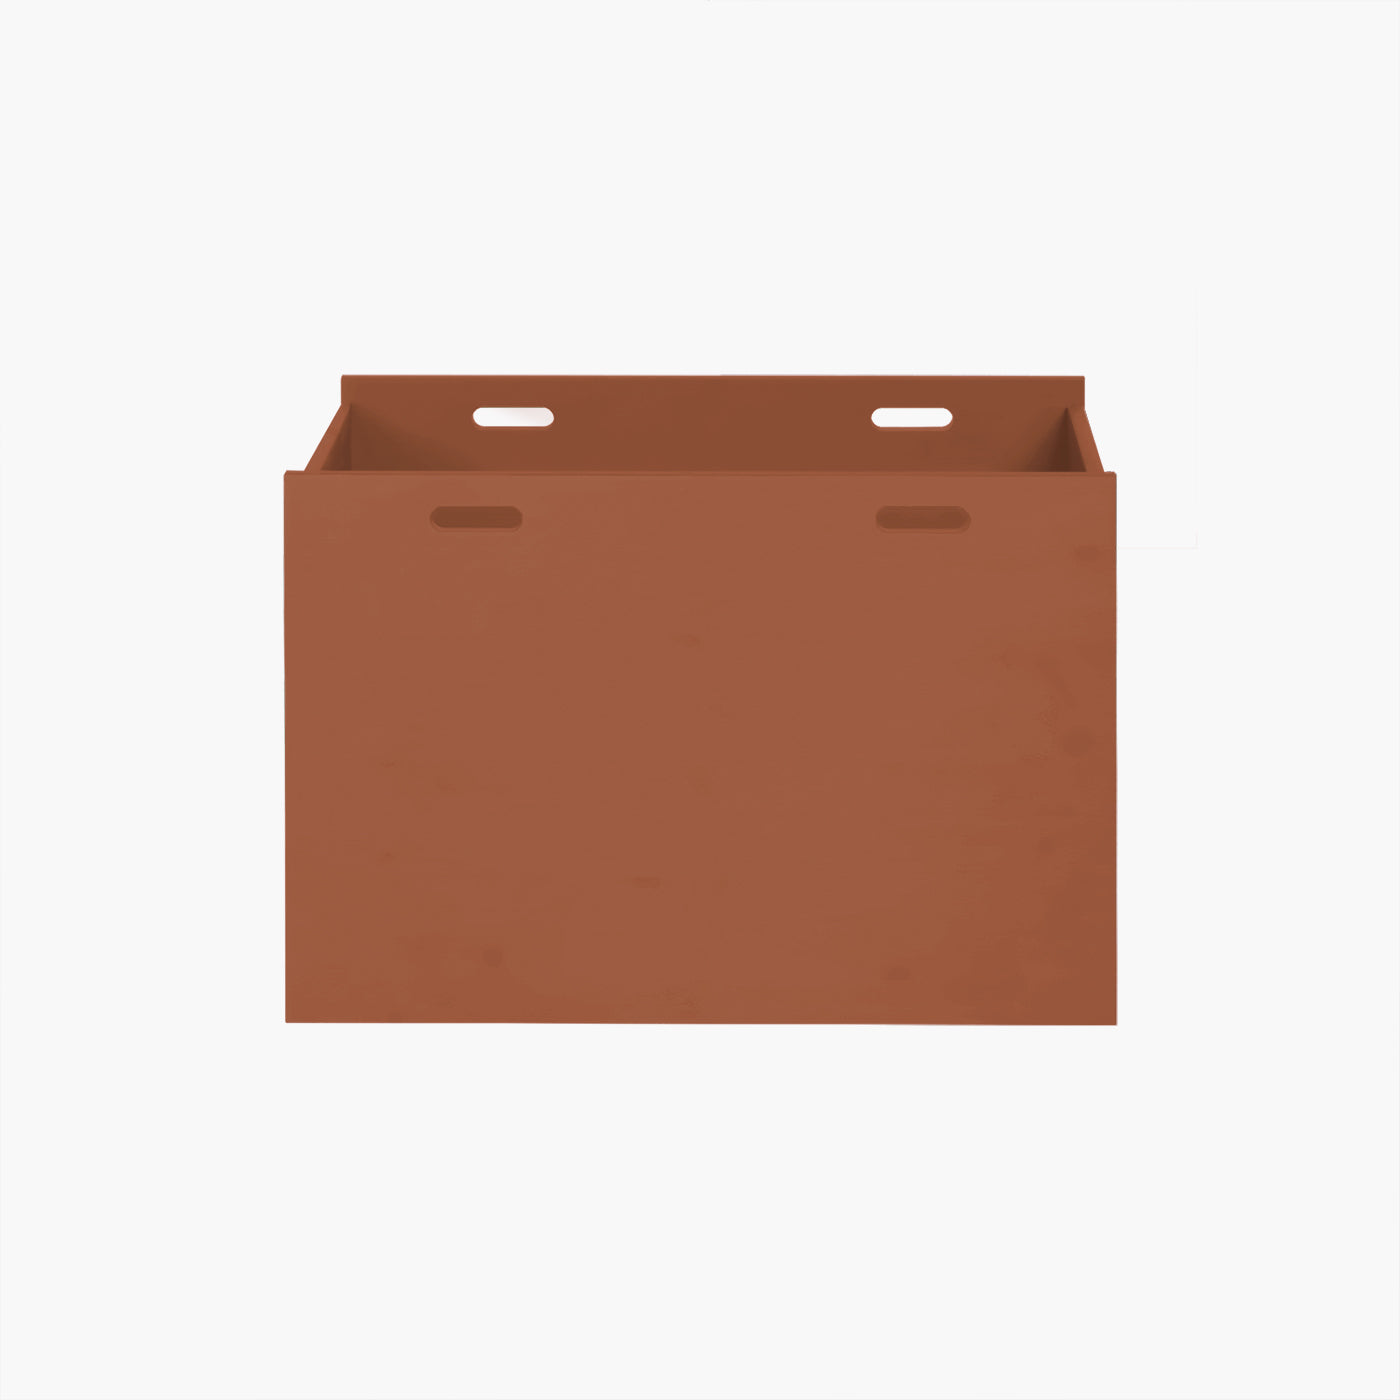 Dana opbevaringskasse - Rusty | Vælg mellem 30 cm eller 40 cm i dybden.